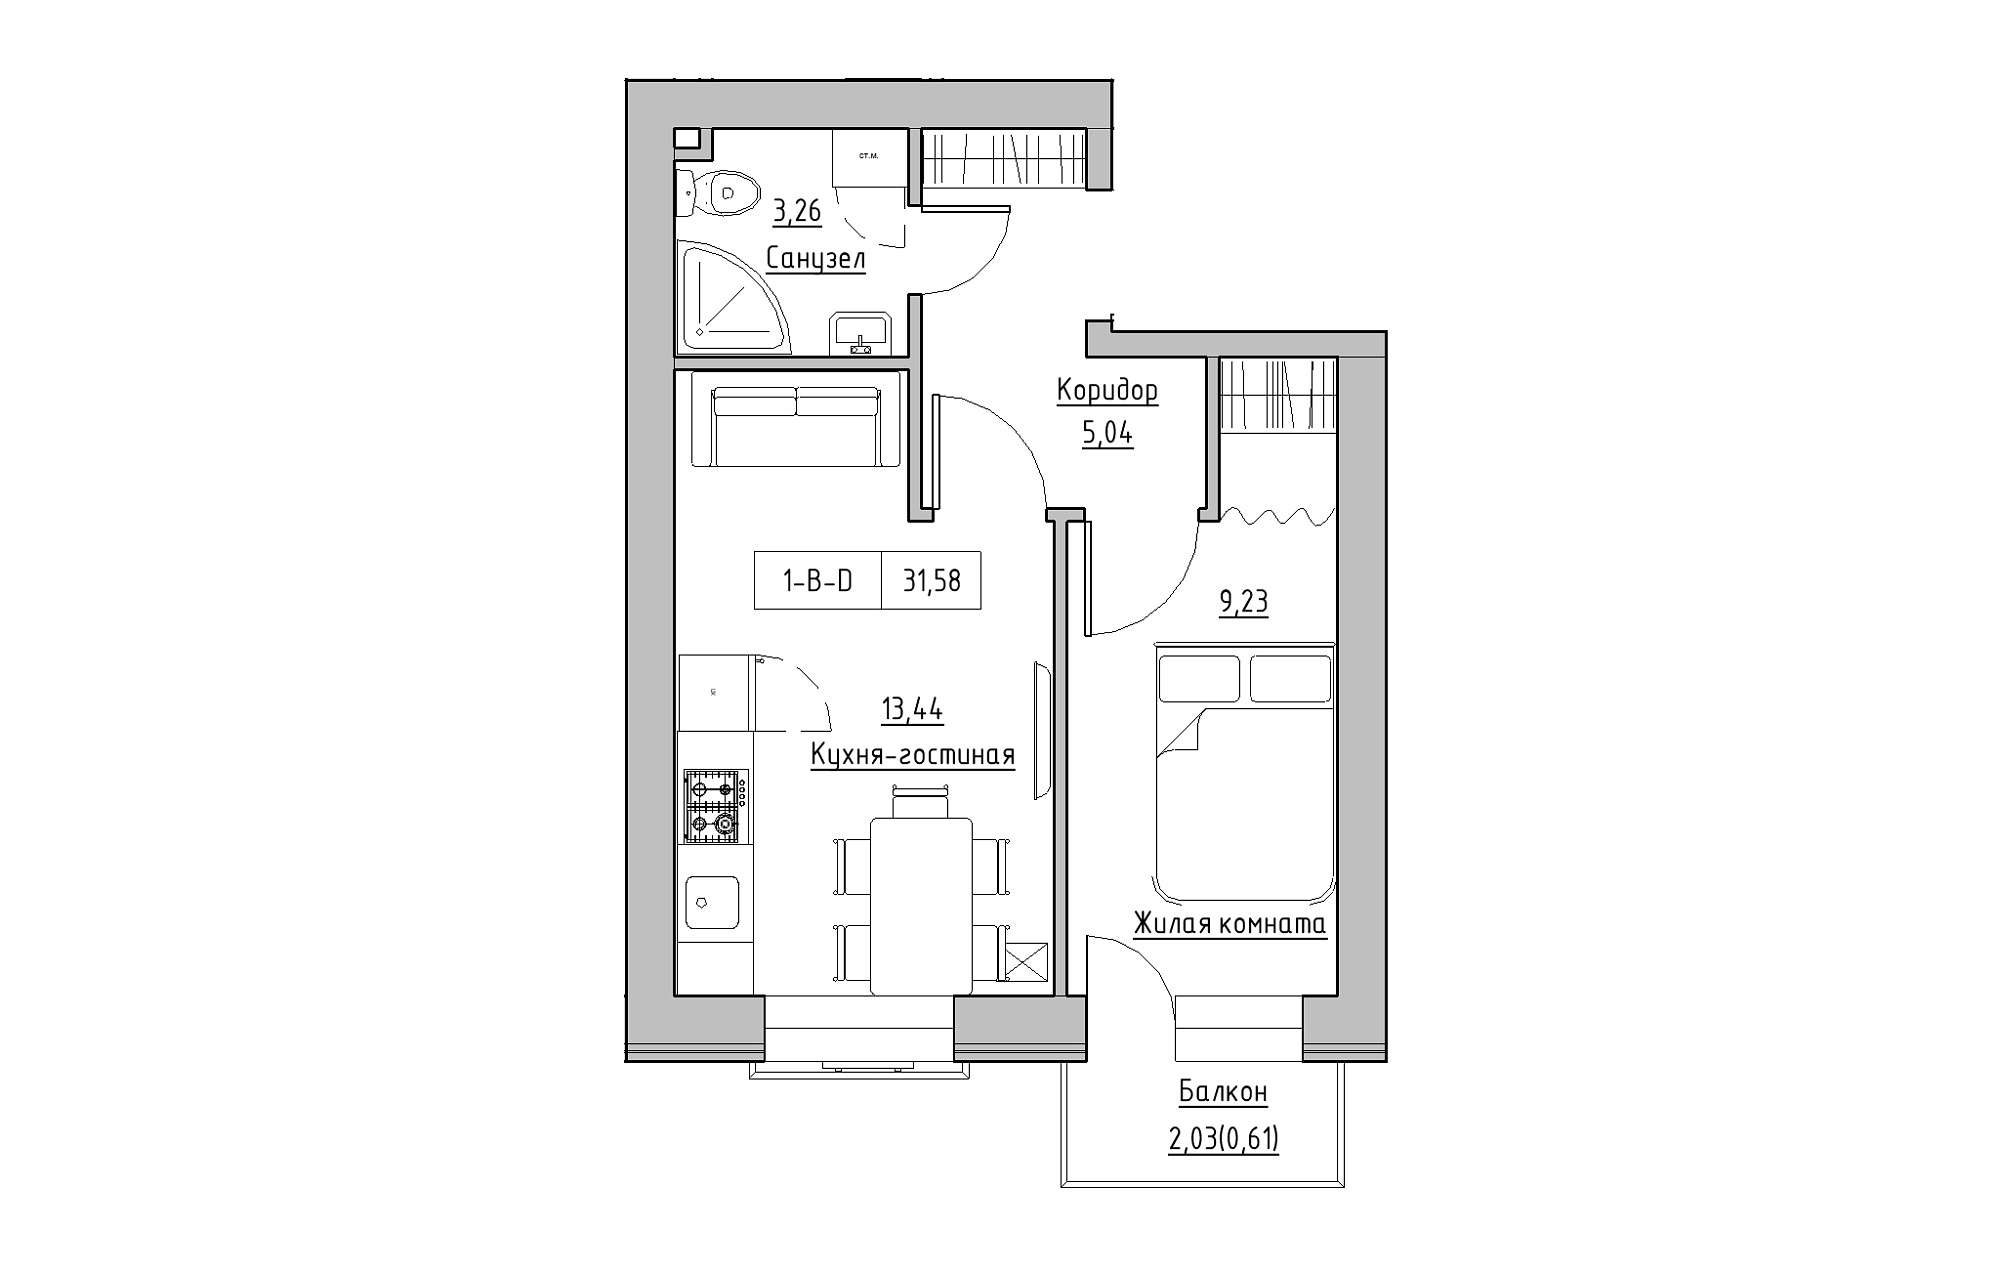 Планировка 1-к квартира площей 31.58м2, KS-018-03/0003.